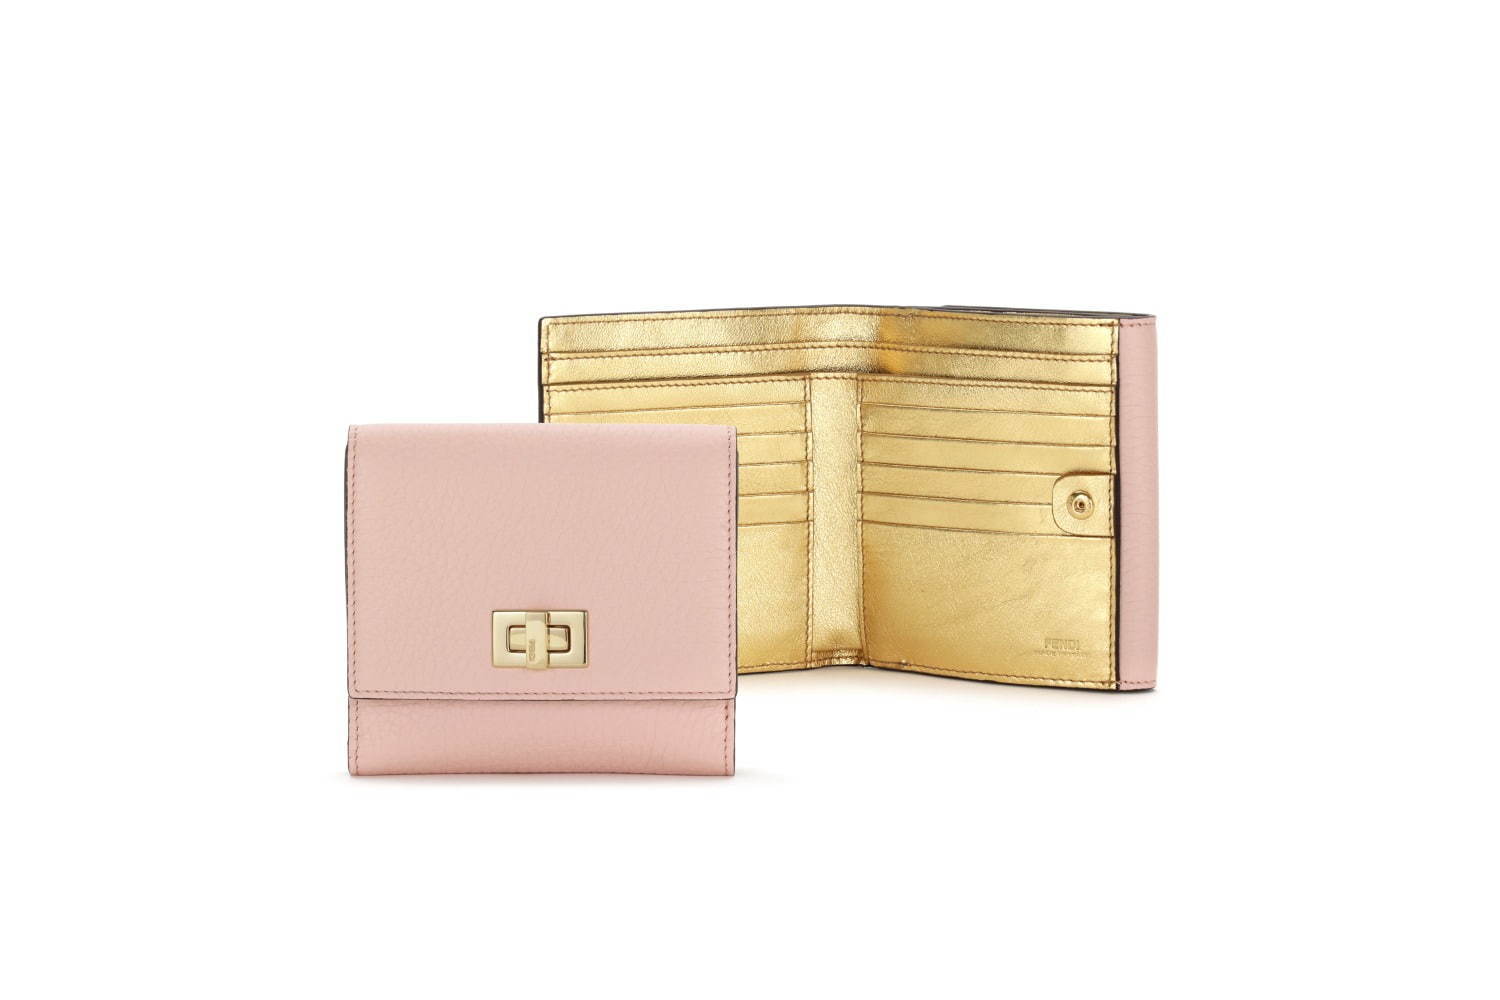 フェンディ ピーカブー 日本限定の新作レザーグッズ ピンク ゴールドの財布やキーケース ファッションプレス